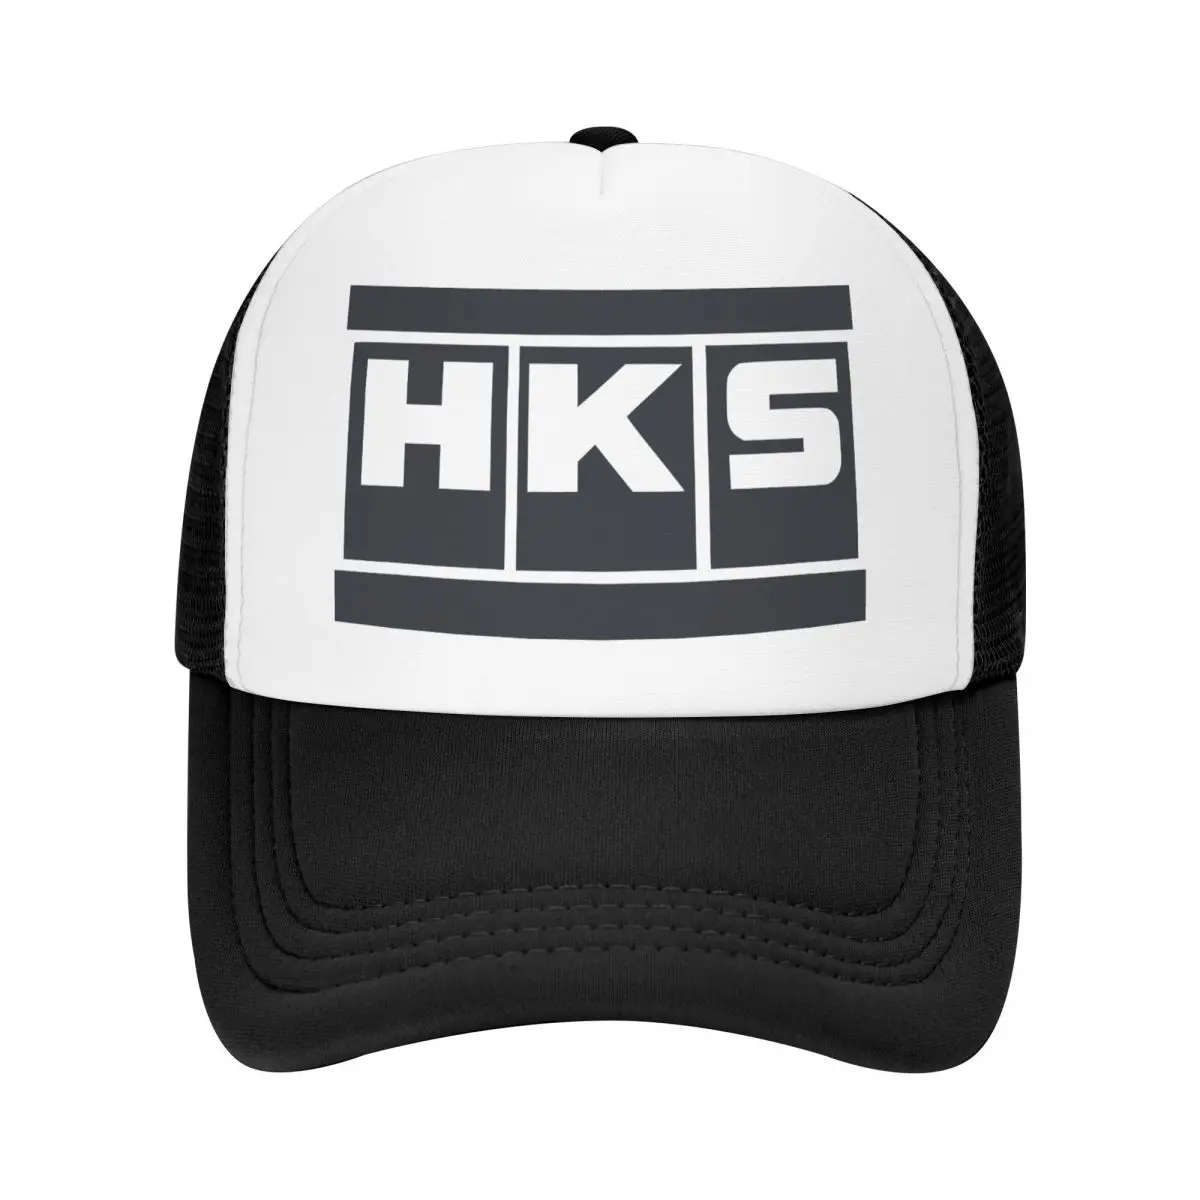 

Бейсболка Hks Power и Sportser с логотипом Turbo для мужчин и женщин, регулируемая сетчатая шляпа унисекс для рыбалки